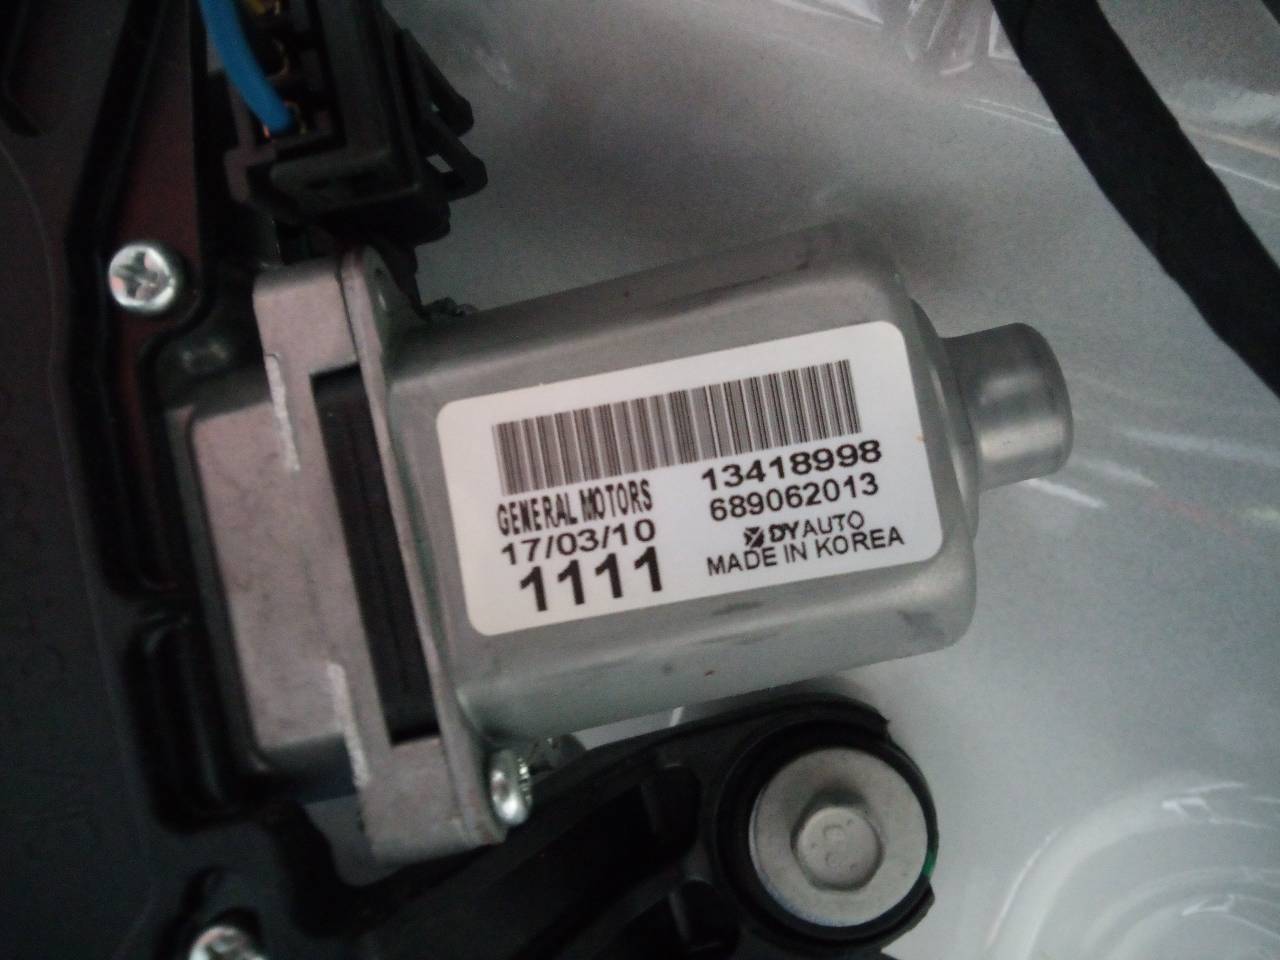 OPEL Astra K (2015-2021) Tailgate  Window Wiper Motor 13418998, 689062013 21830875